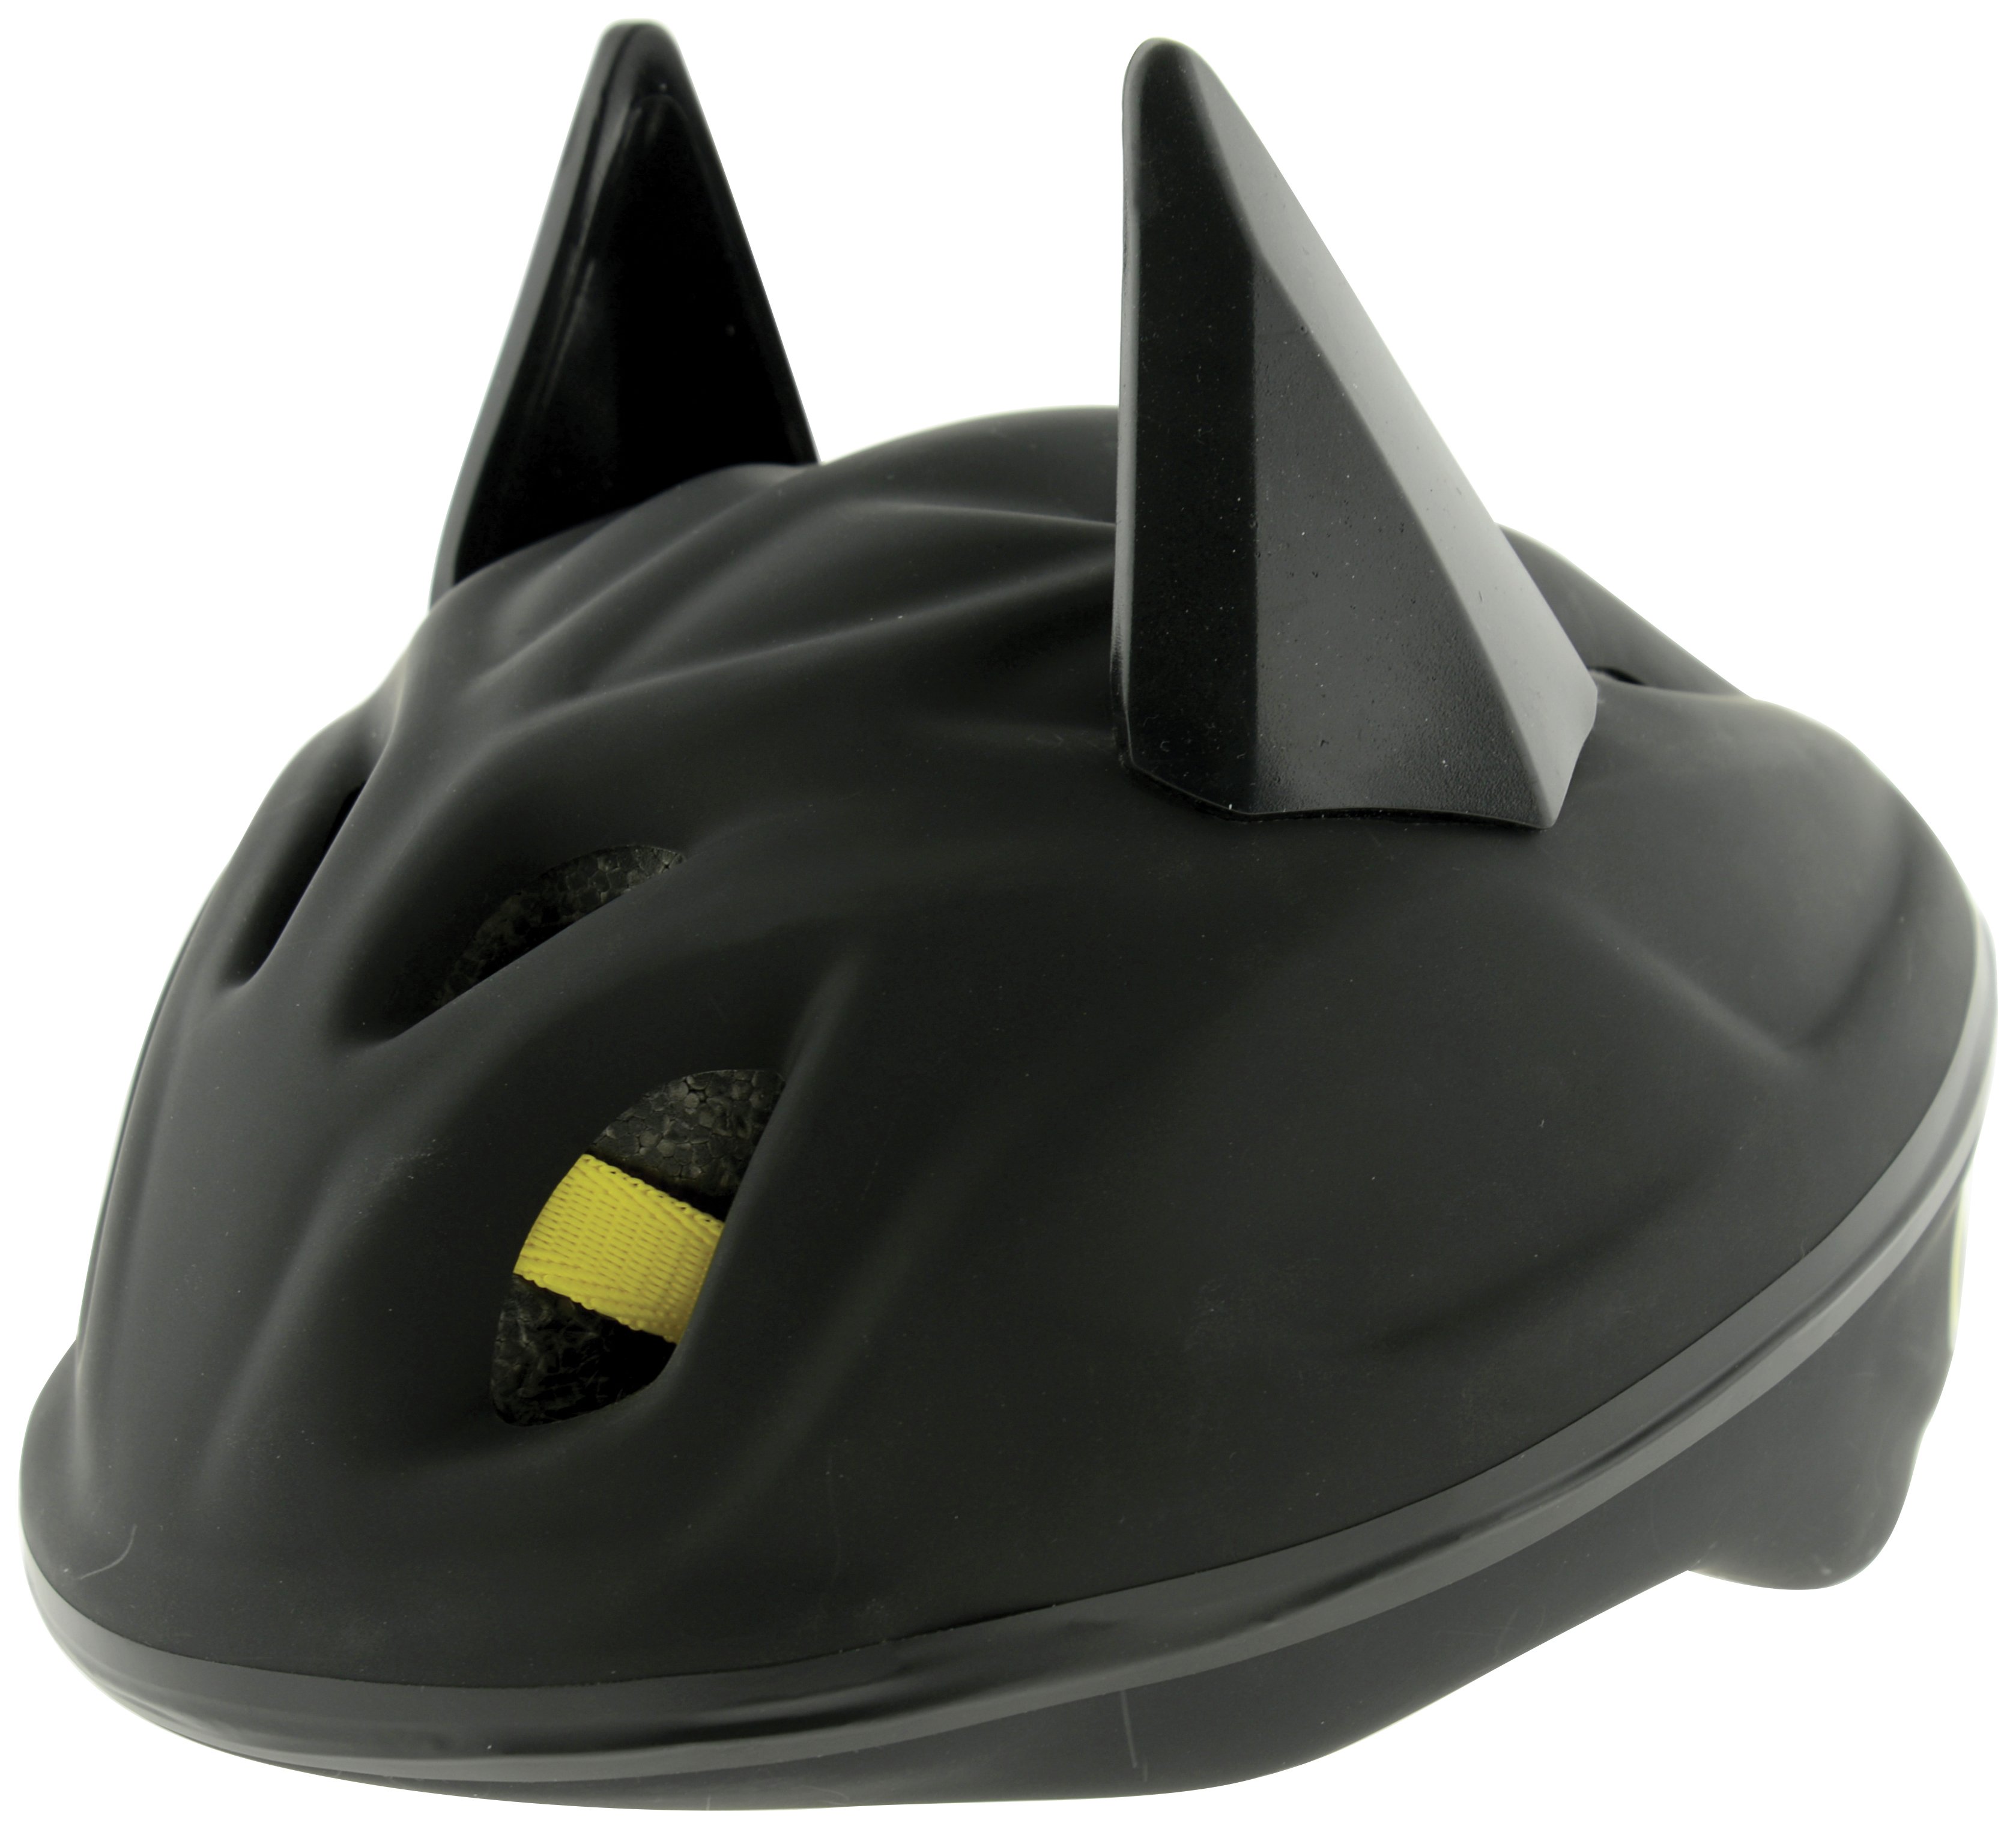 Batman 3D Bat Safety Helmet